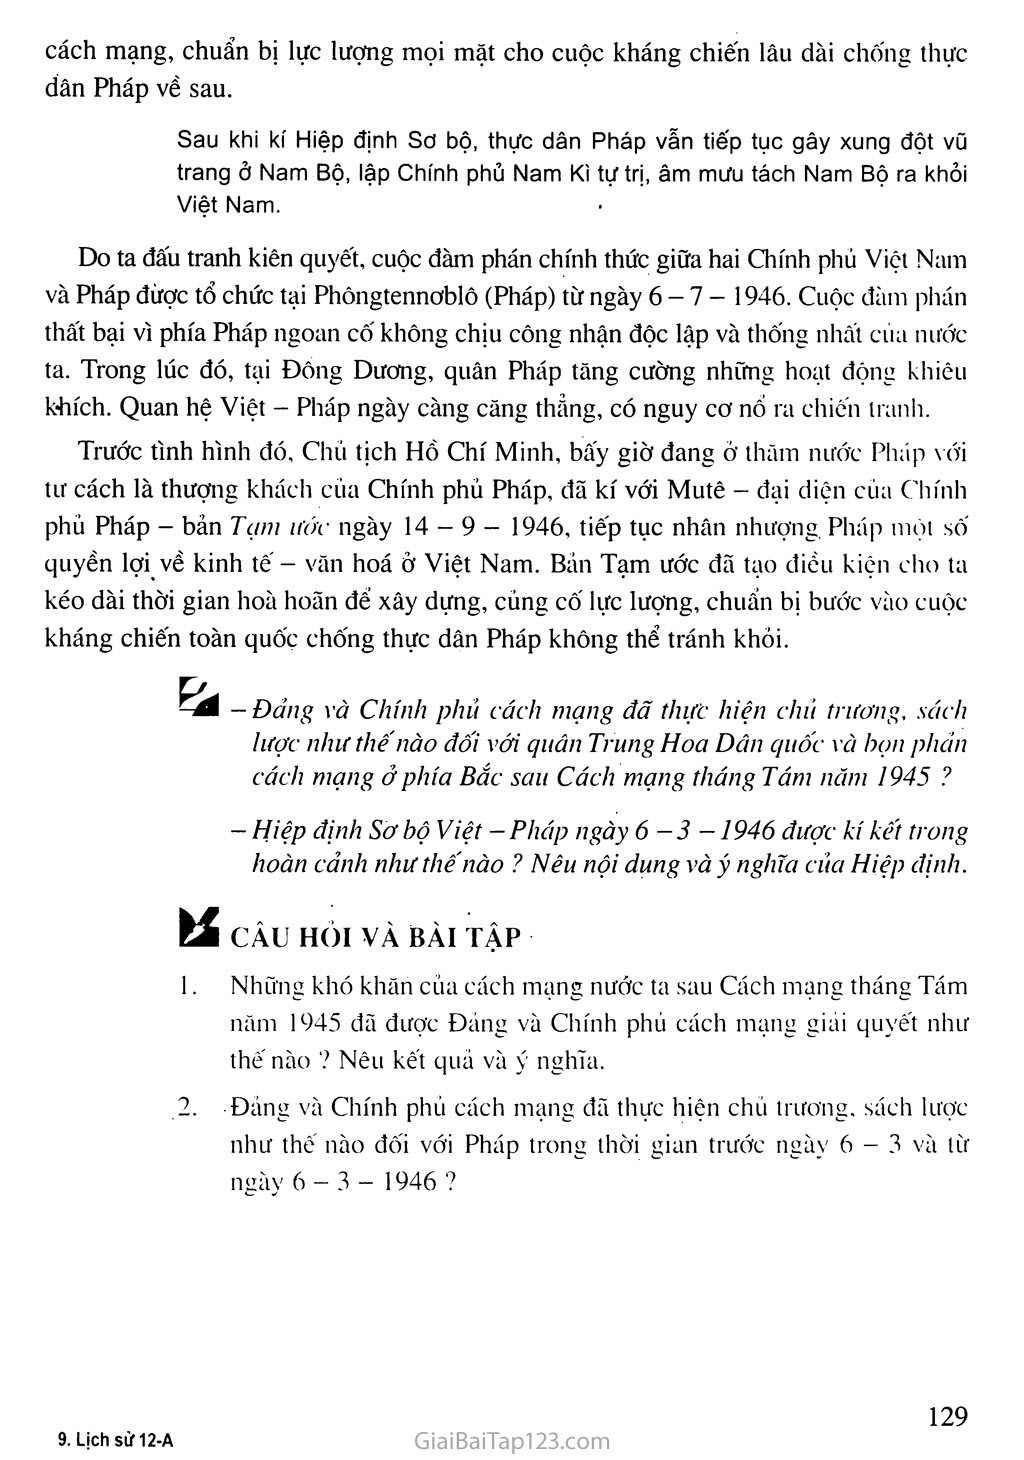 Bài 17. Nước Việt Nam Dân chủ Cộng hoà từ sau ngày 2-9-1945 đến trước ngày 19 - 12 - 1946 trang 9